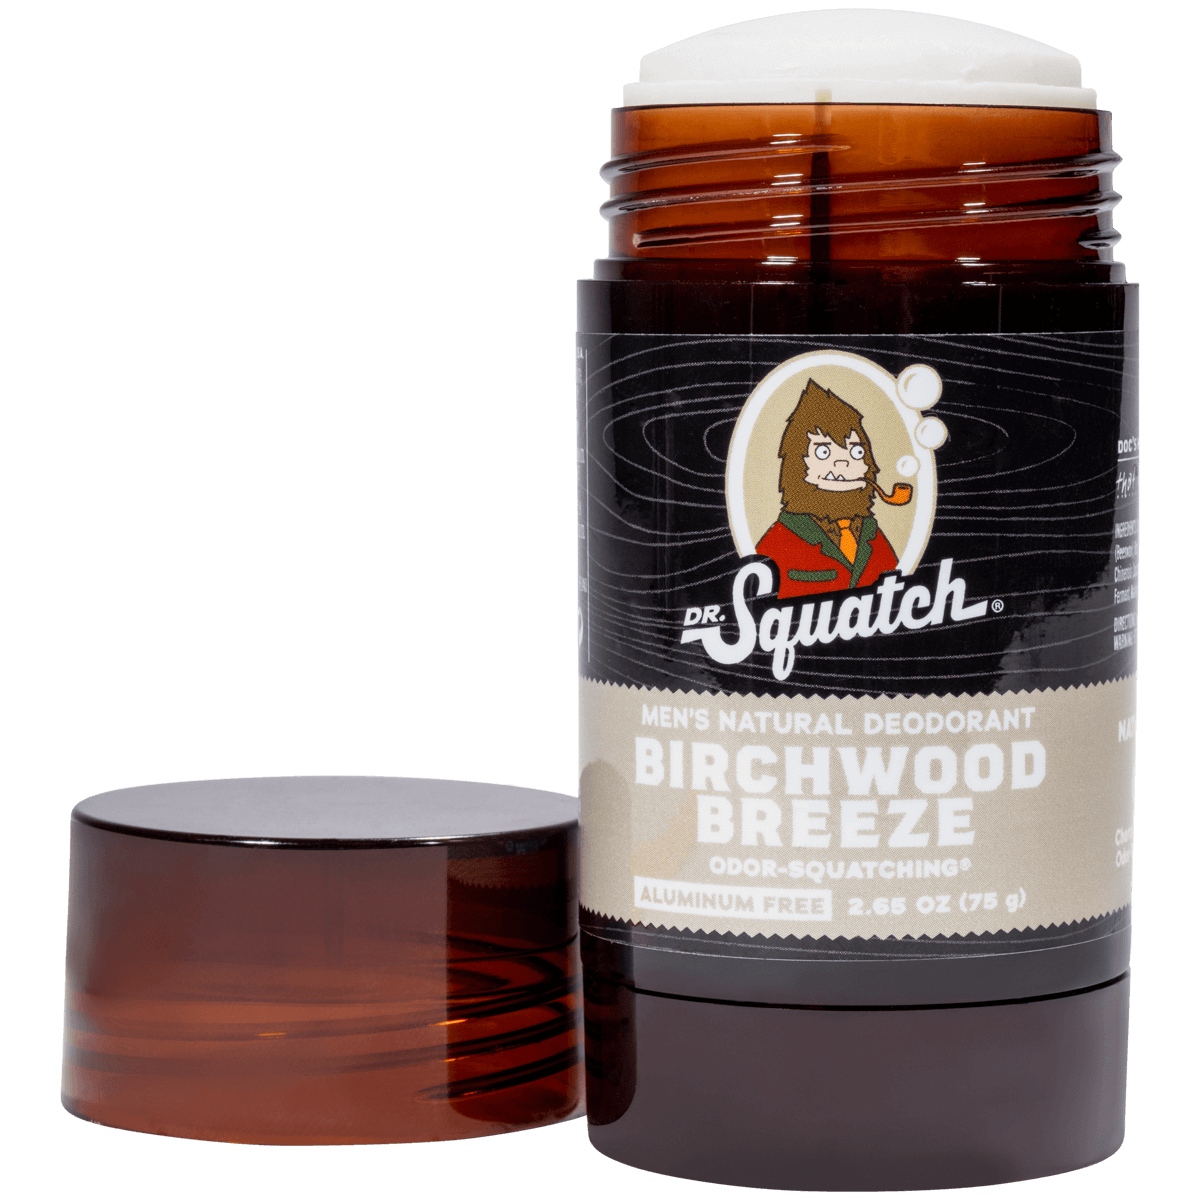 Birchwood Breeze - Dr. Squatch - UK